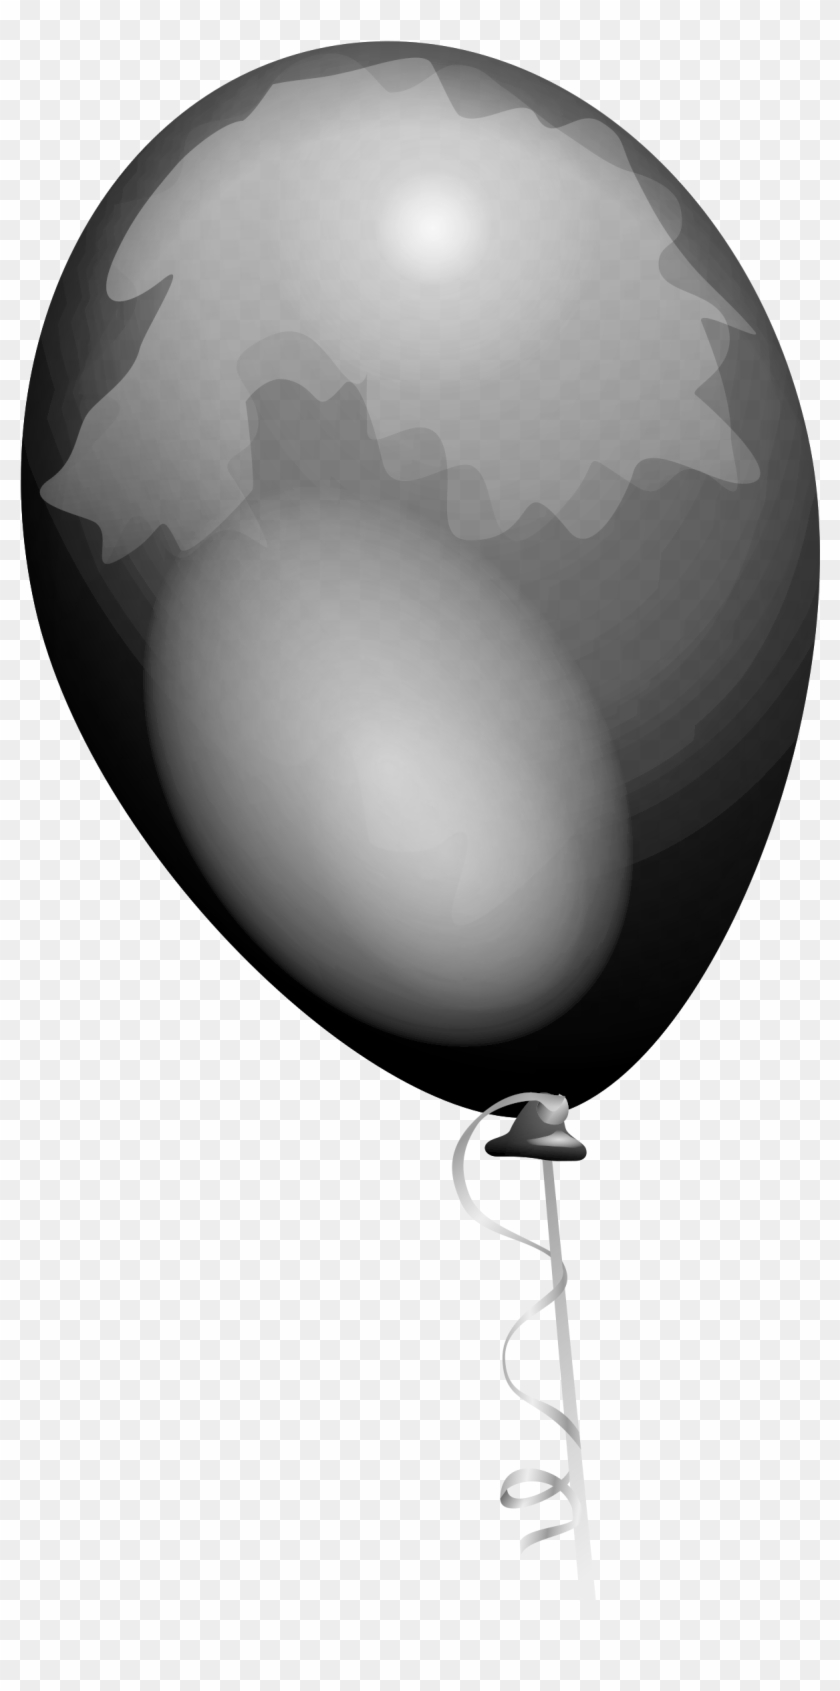 clipart balloons grey